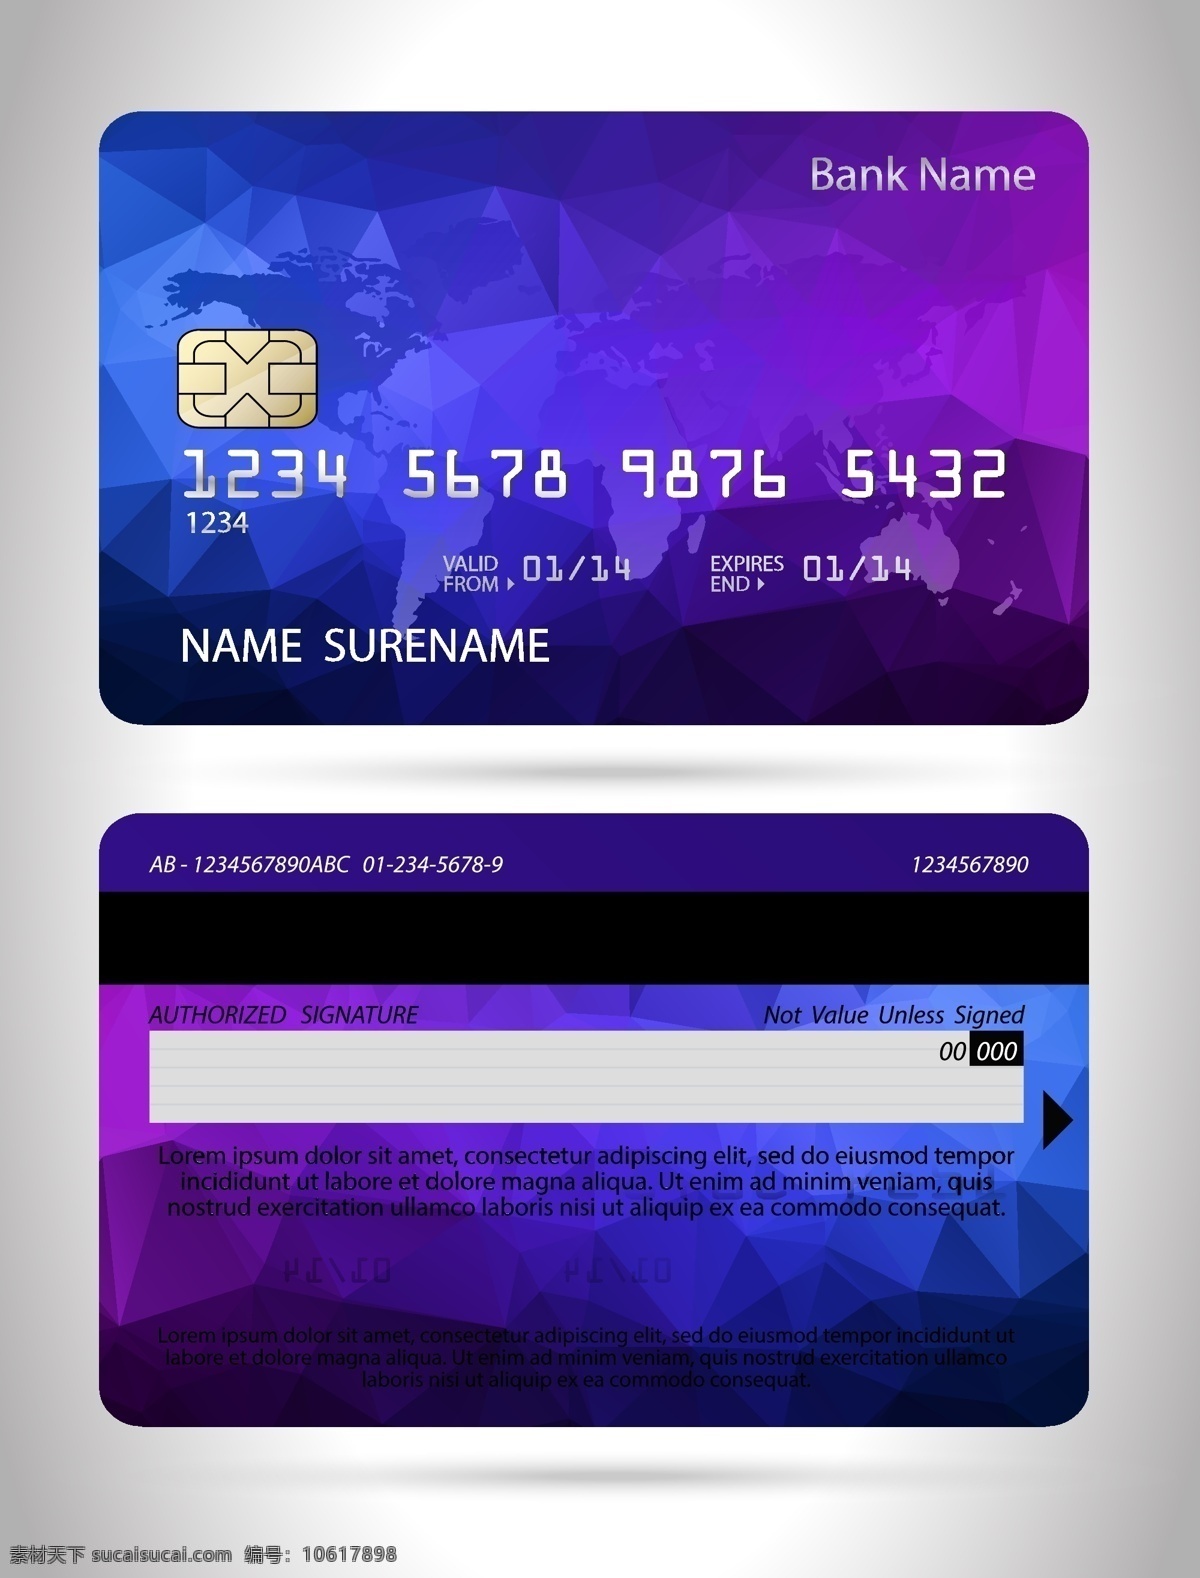 信用卡 信誉卡 银行卡 商务金融 卡片 贵宾卡 vip卡 磁卡 电话卡 商务 科技 名片 名片卡片 矢量